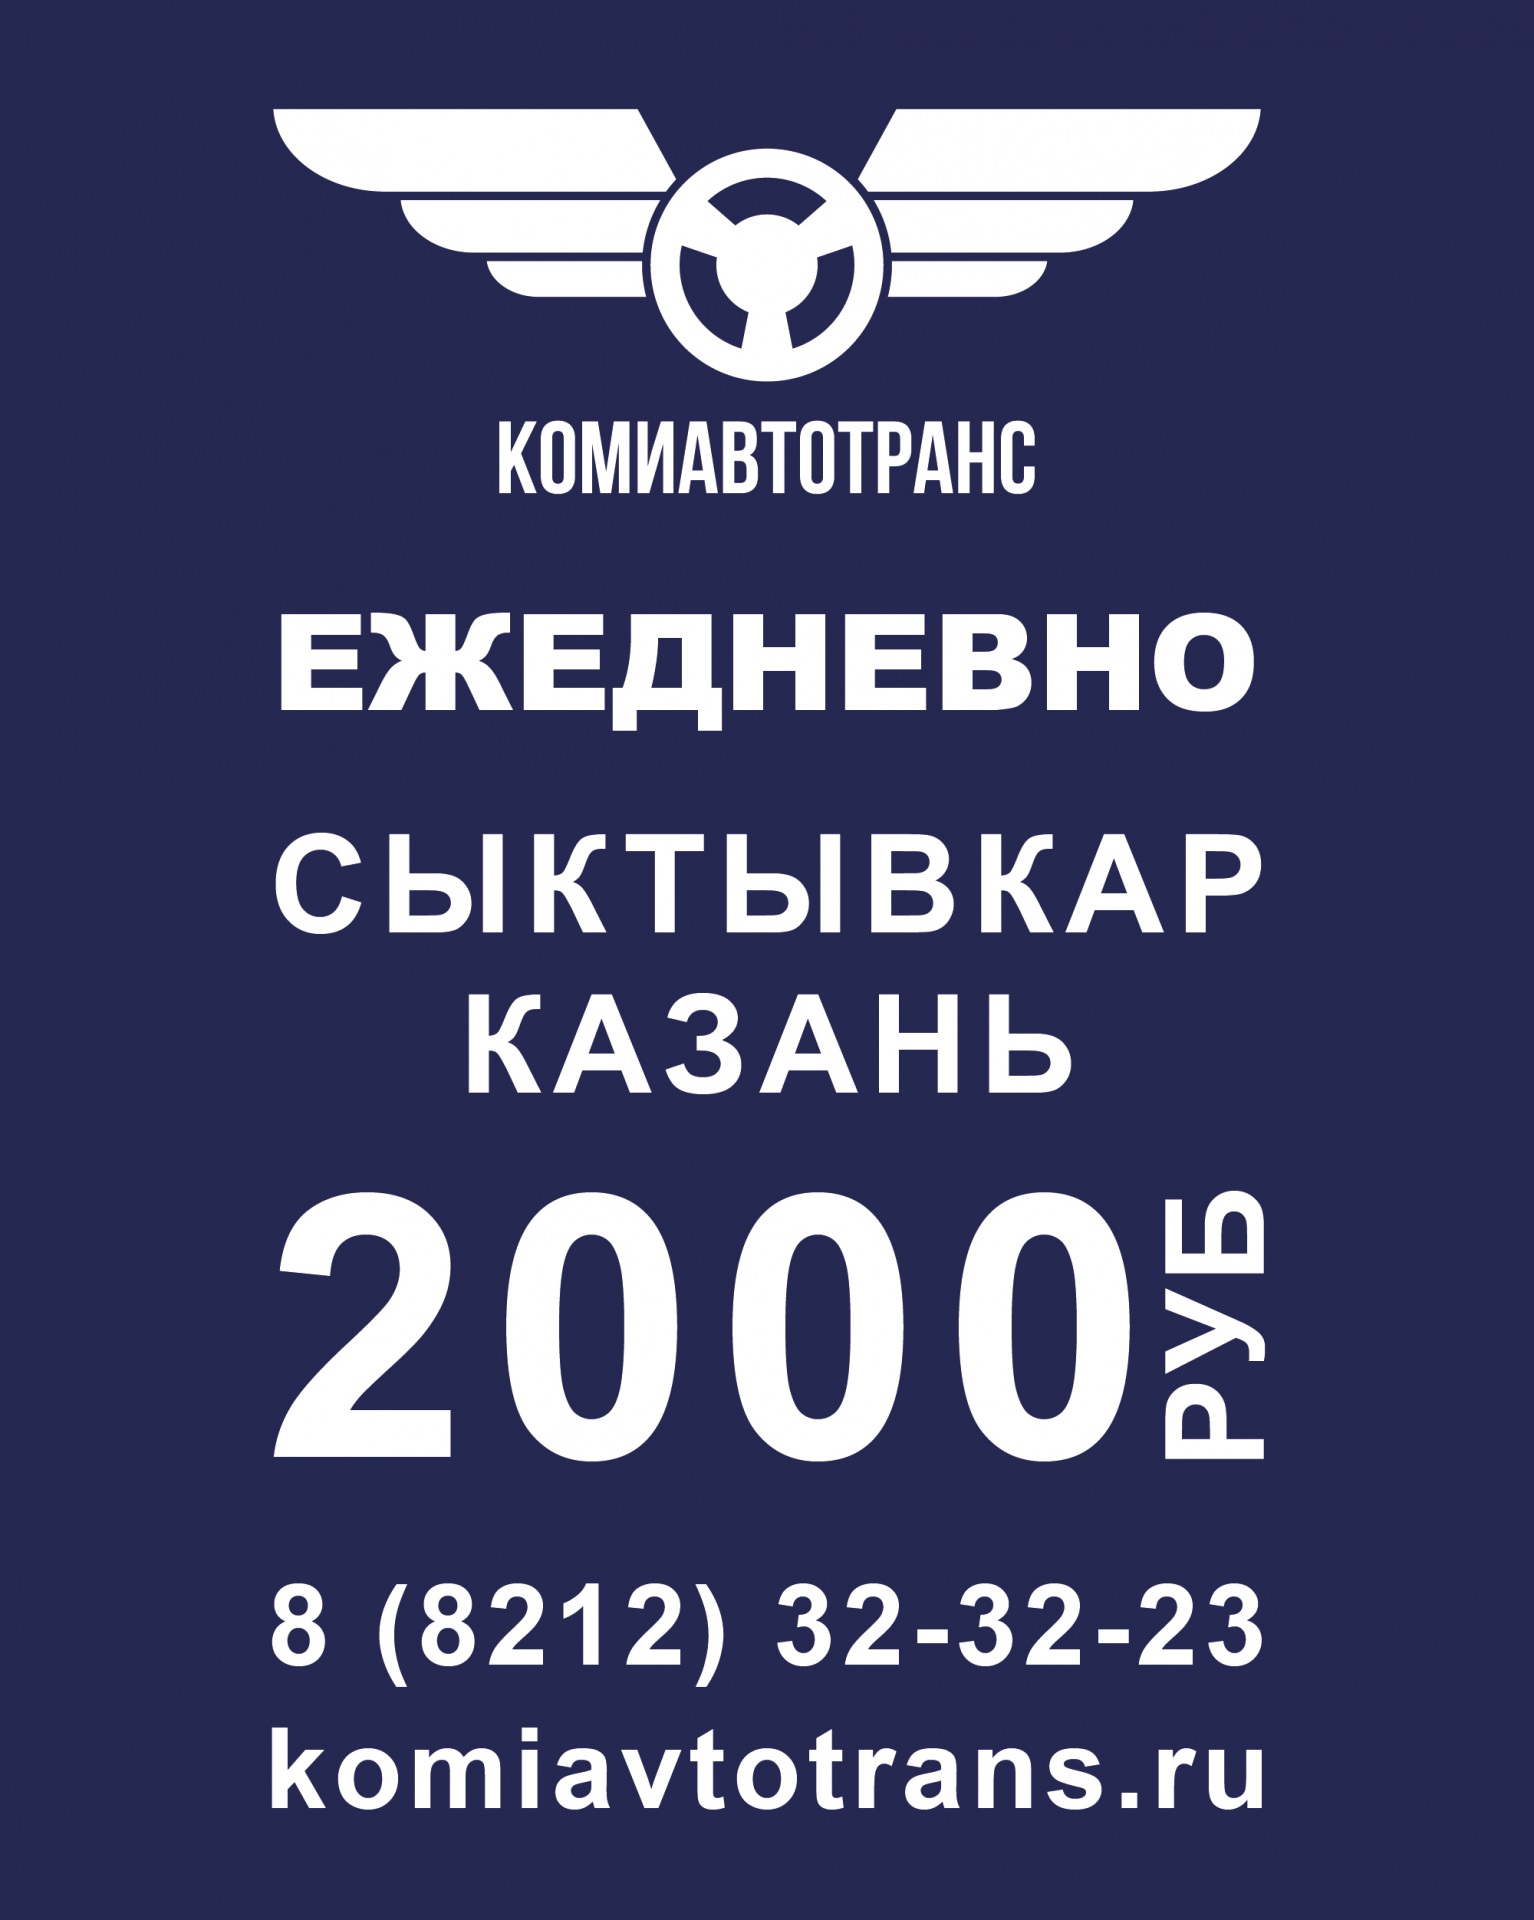 Maket-reklamy-reisa-dlya-postov-v-VK_Kazan-2000-01.jpg